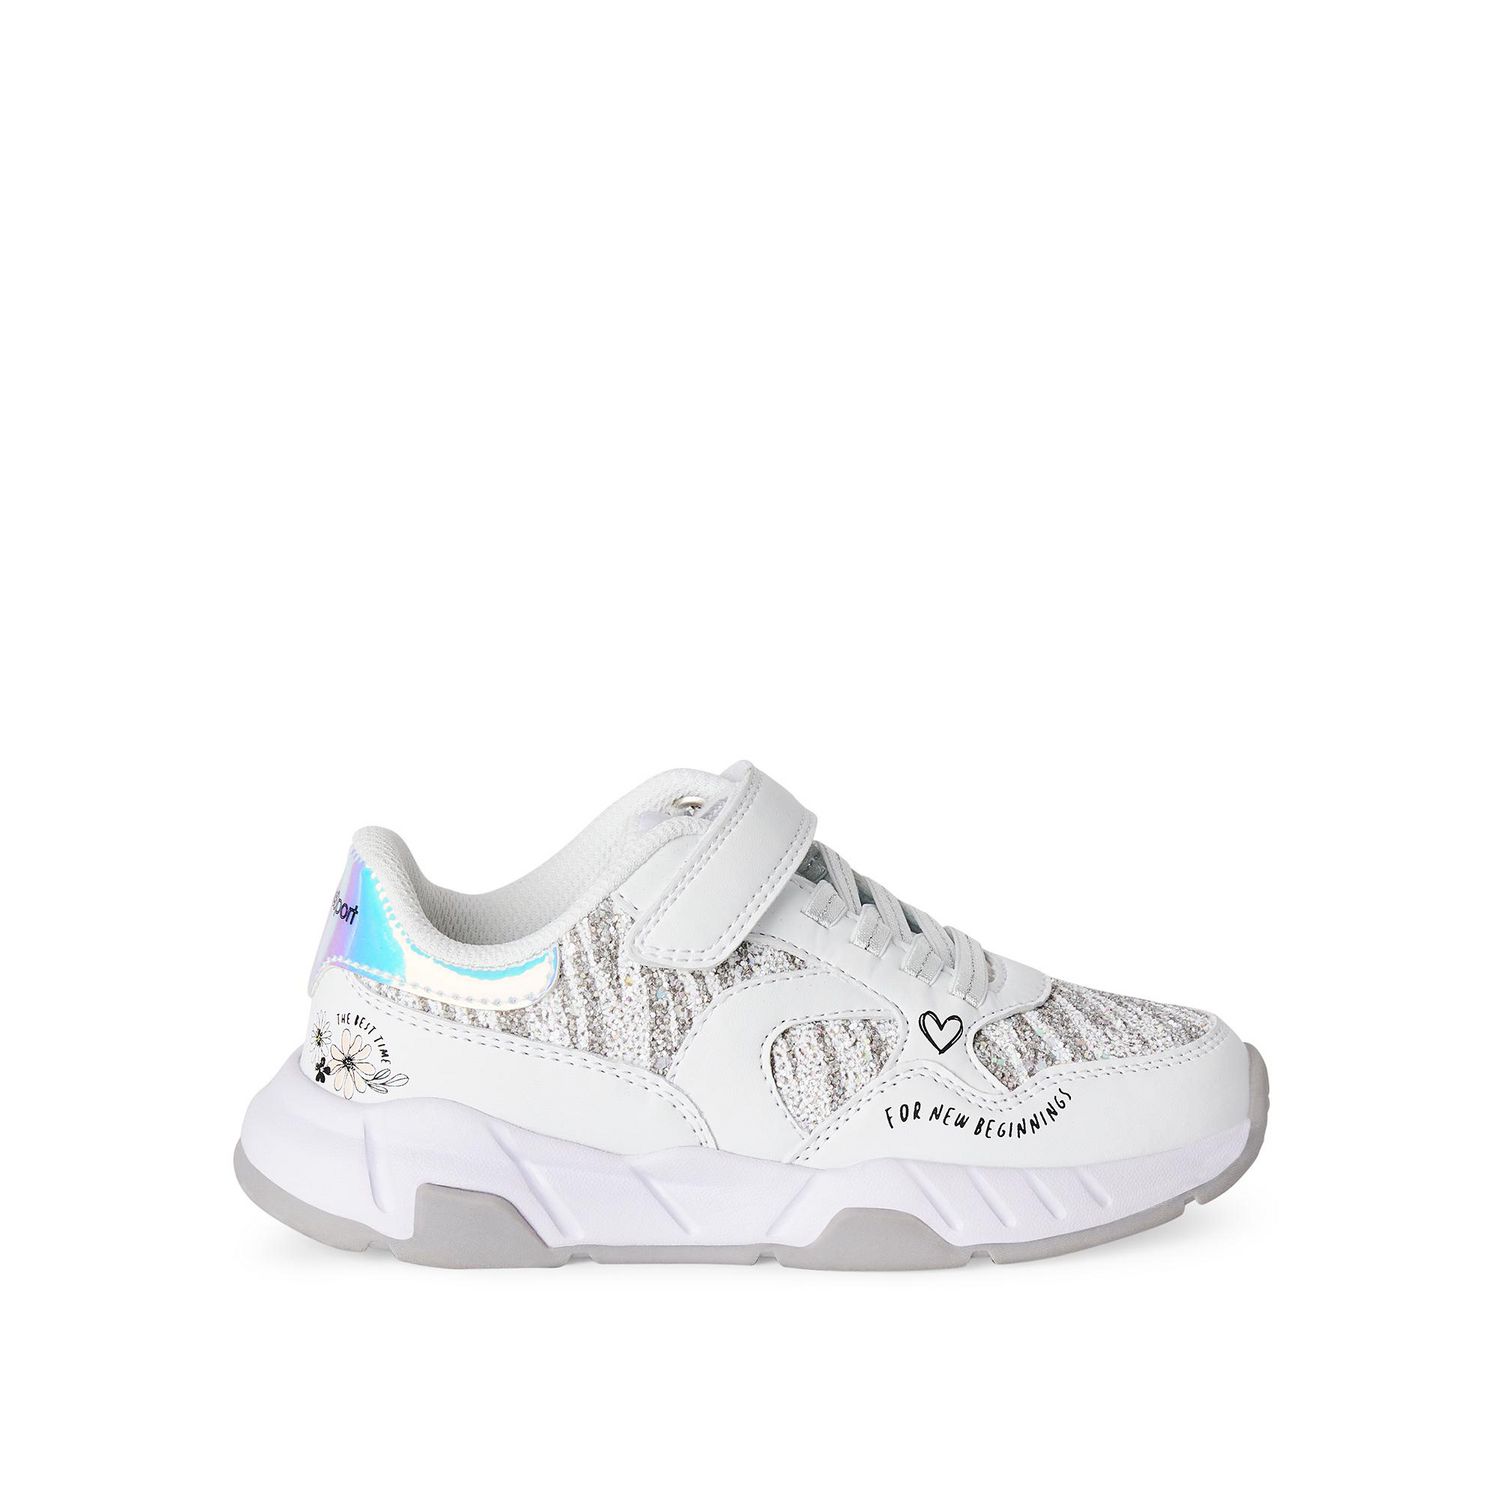 S Sport Designed by Skechers Girls' Chrystal Slip-On Light-Up Sneaker,  Sizes: 13-4